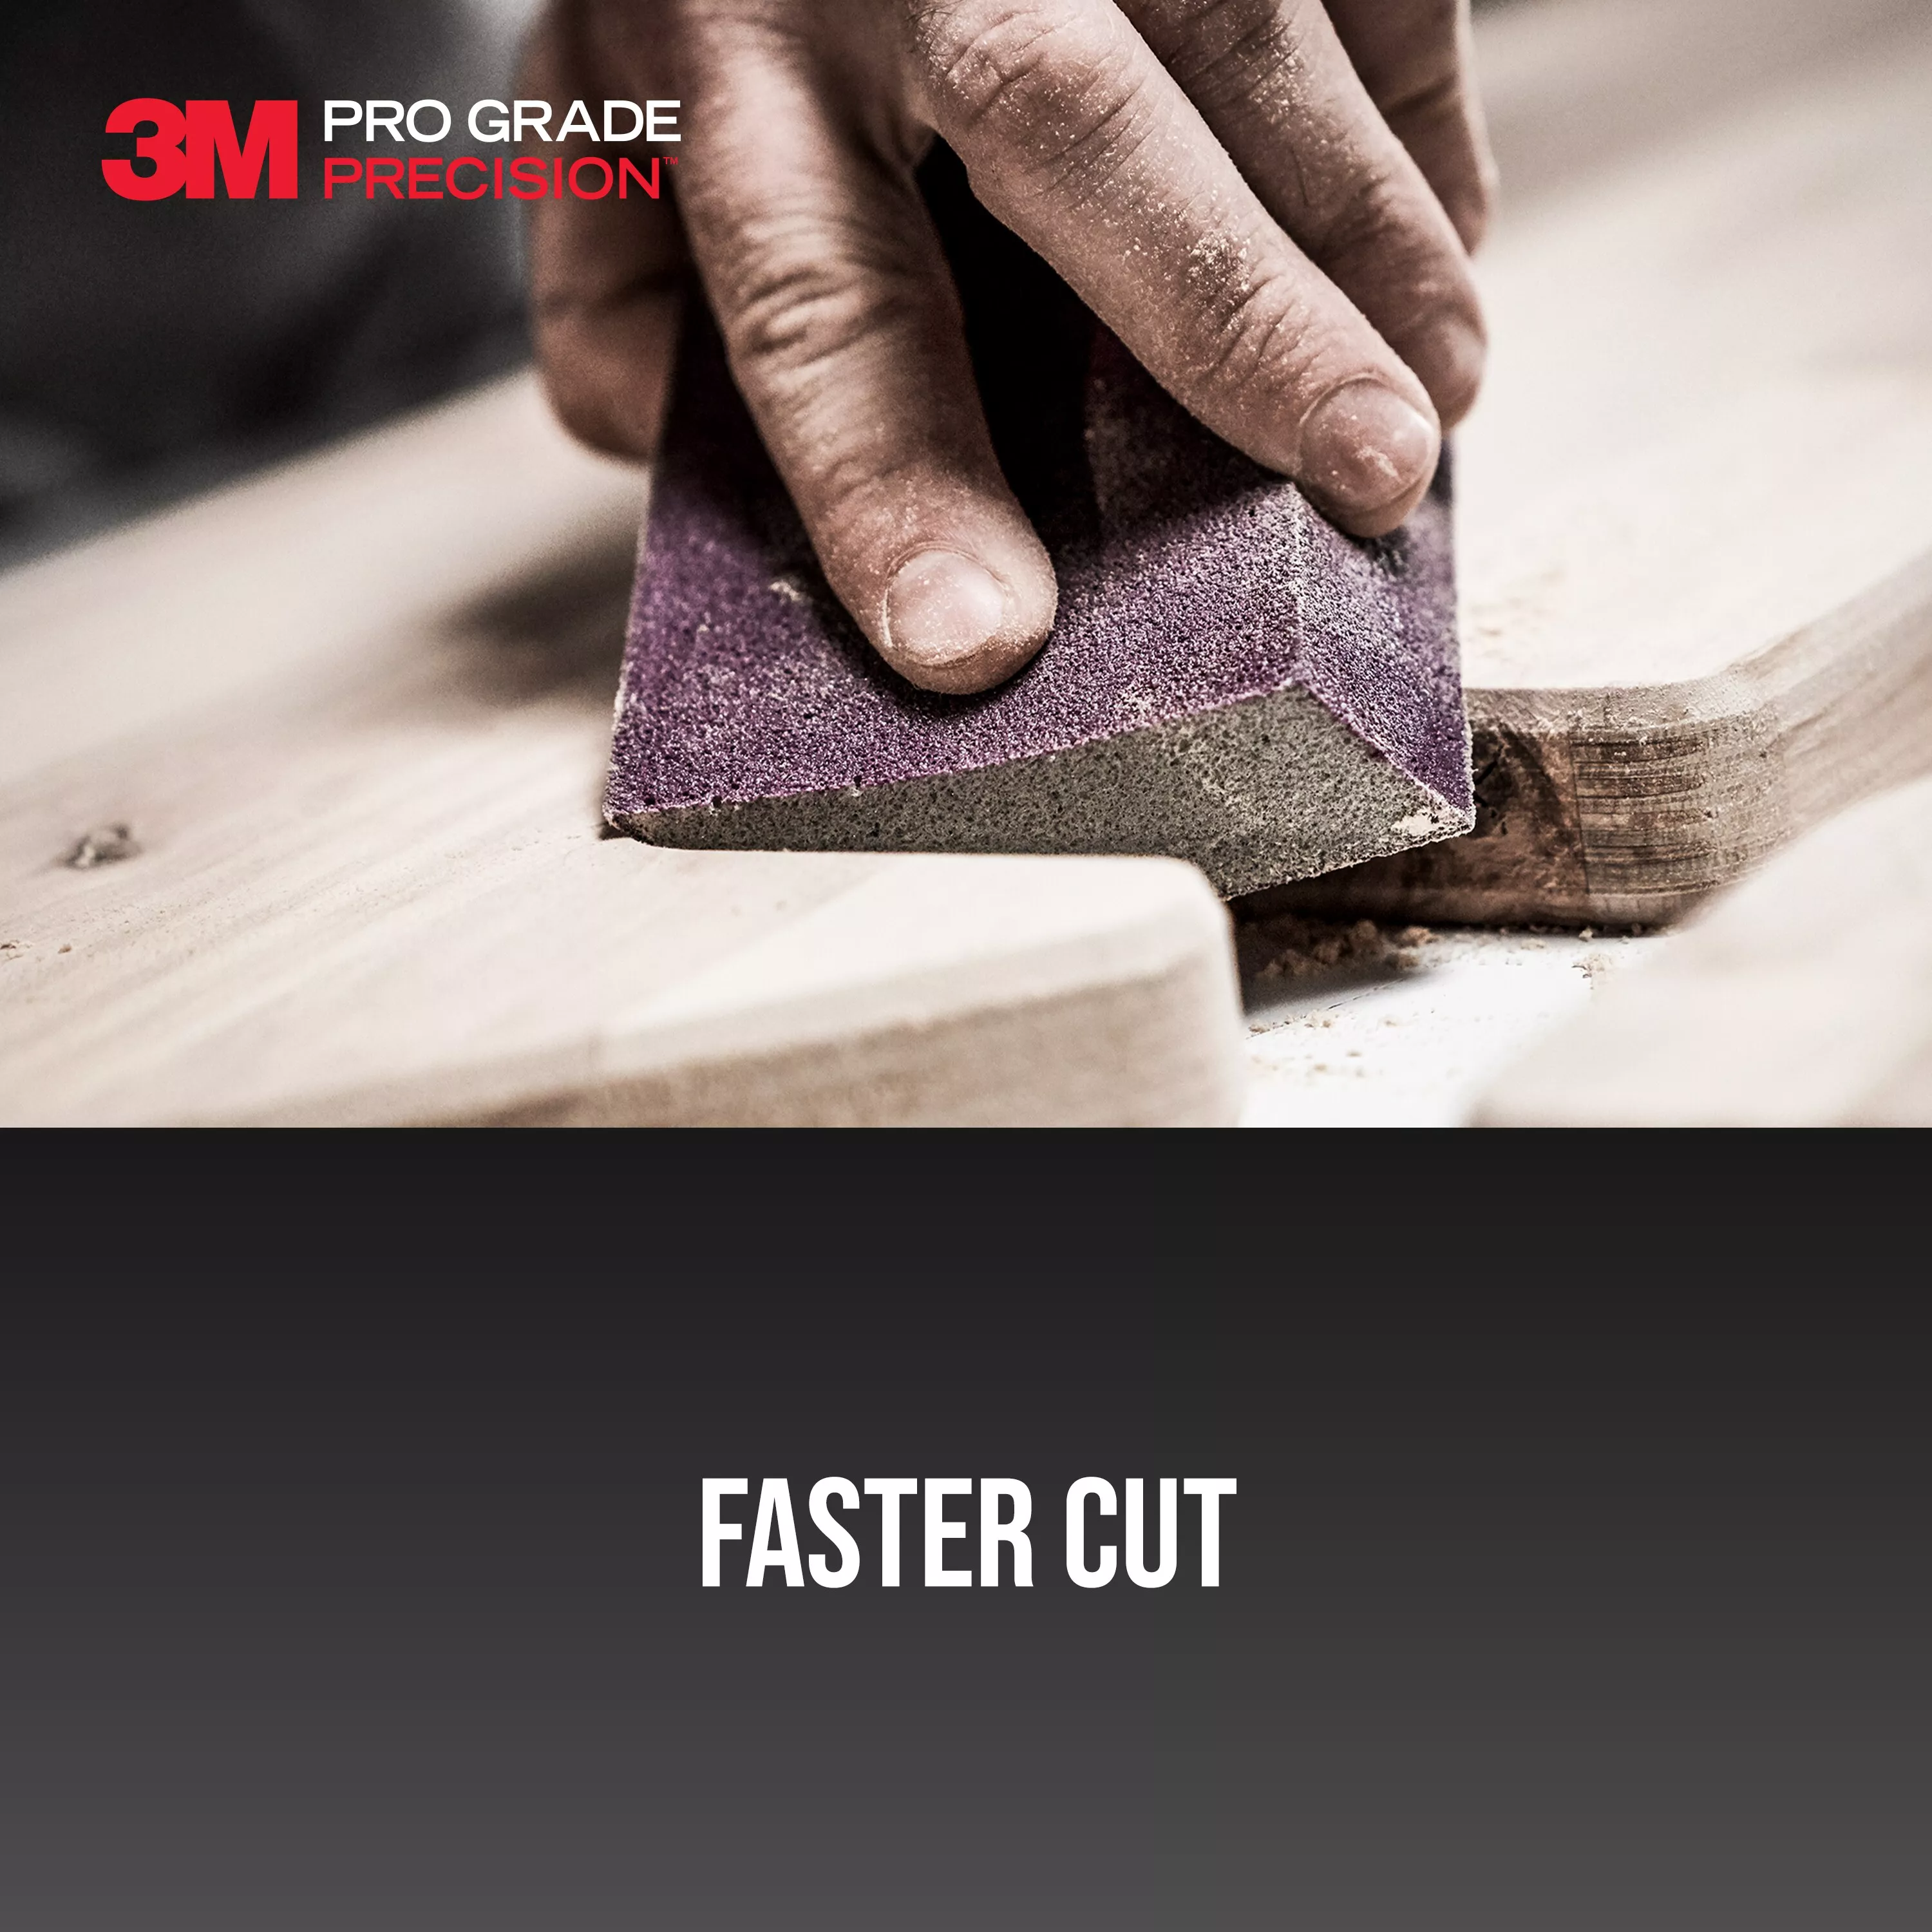 SKU 7100242588 | 3M™ Pro Grade Precision™ Edge Detailing Dual Angle Sanding Sponge
24303TRI-XC-DA